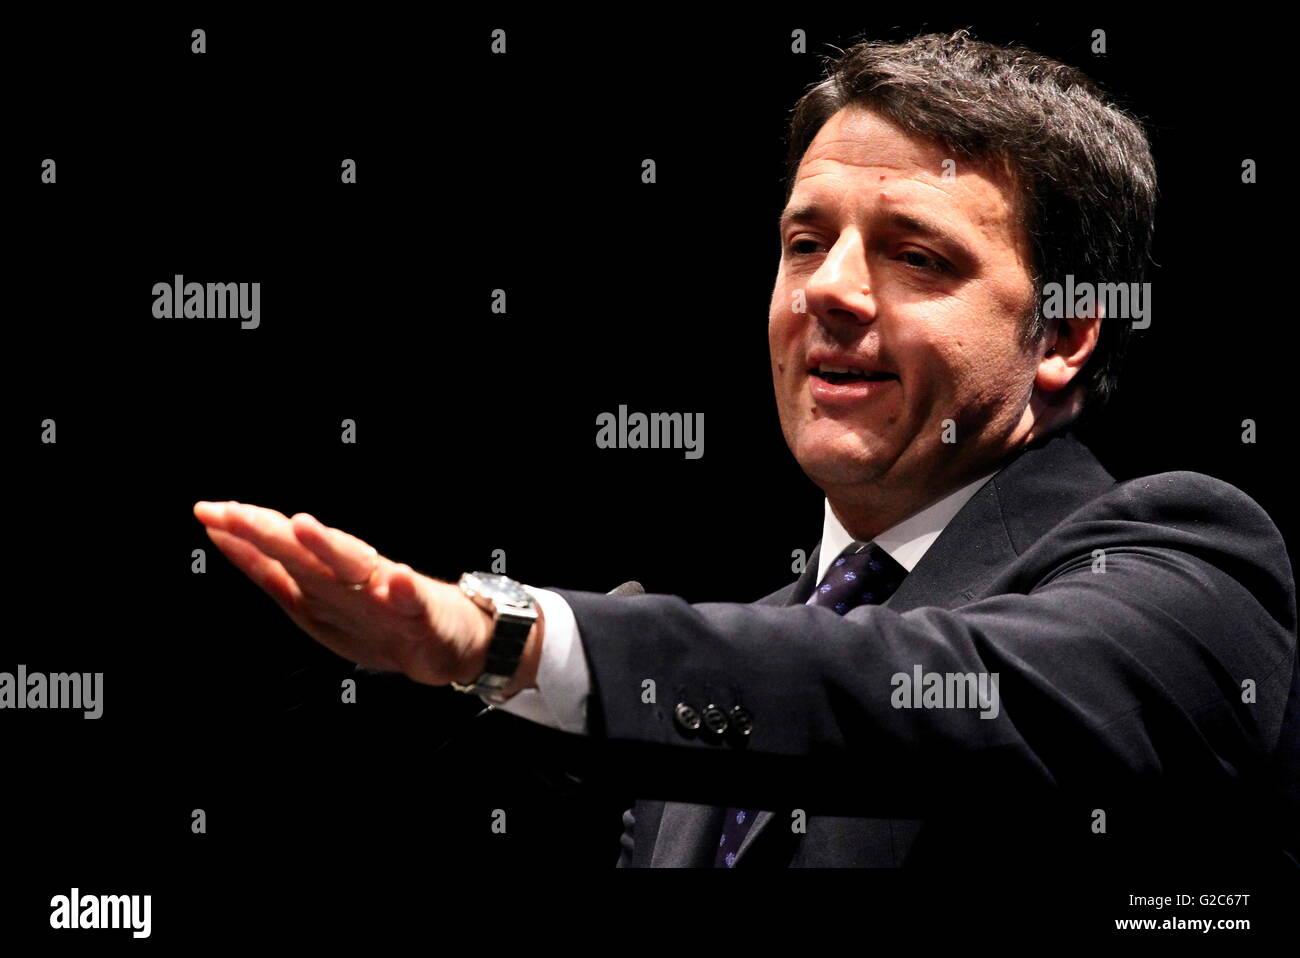 IMatteo Renzi est un homme politique italien. Il est président du Conseil des ministres de la République italienne à partir de février 2013 Banque D'Images